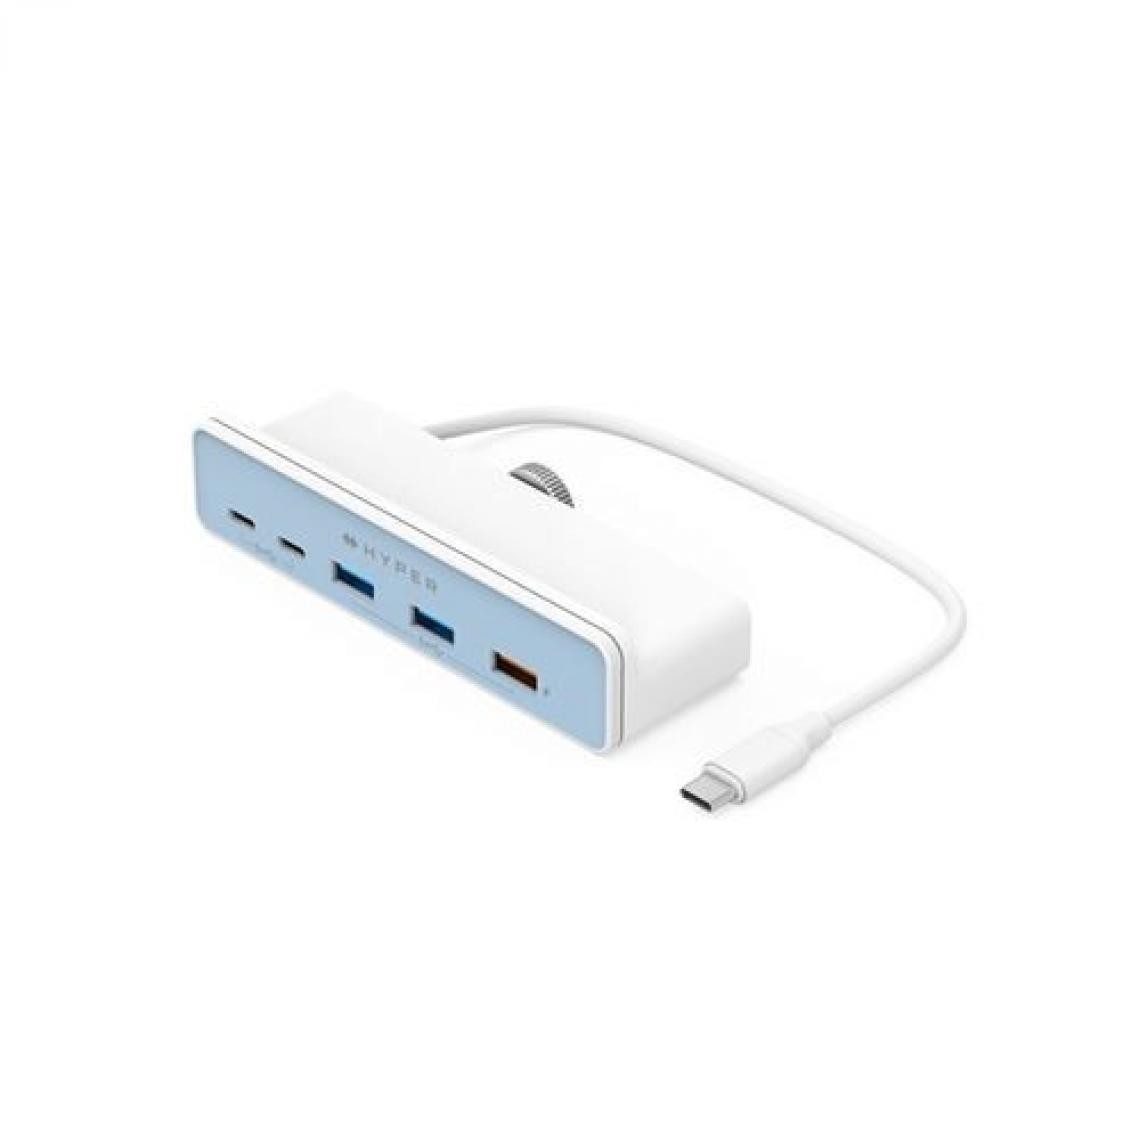 Hyperdrive - Hub USB Type C 5 en 1 HyperDrive Blanc pour iMac 24" - Hub